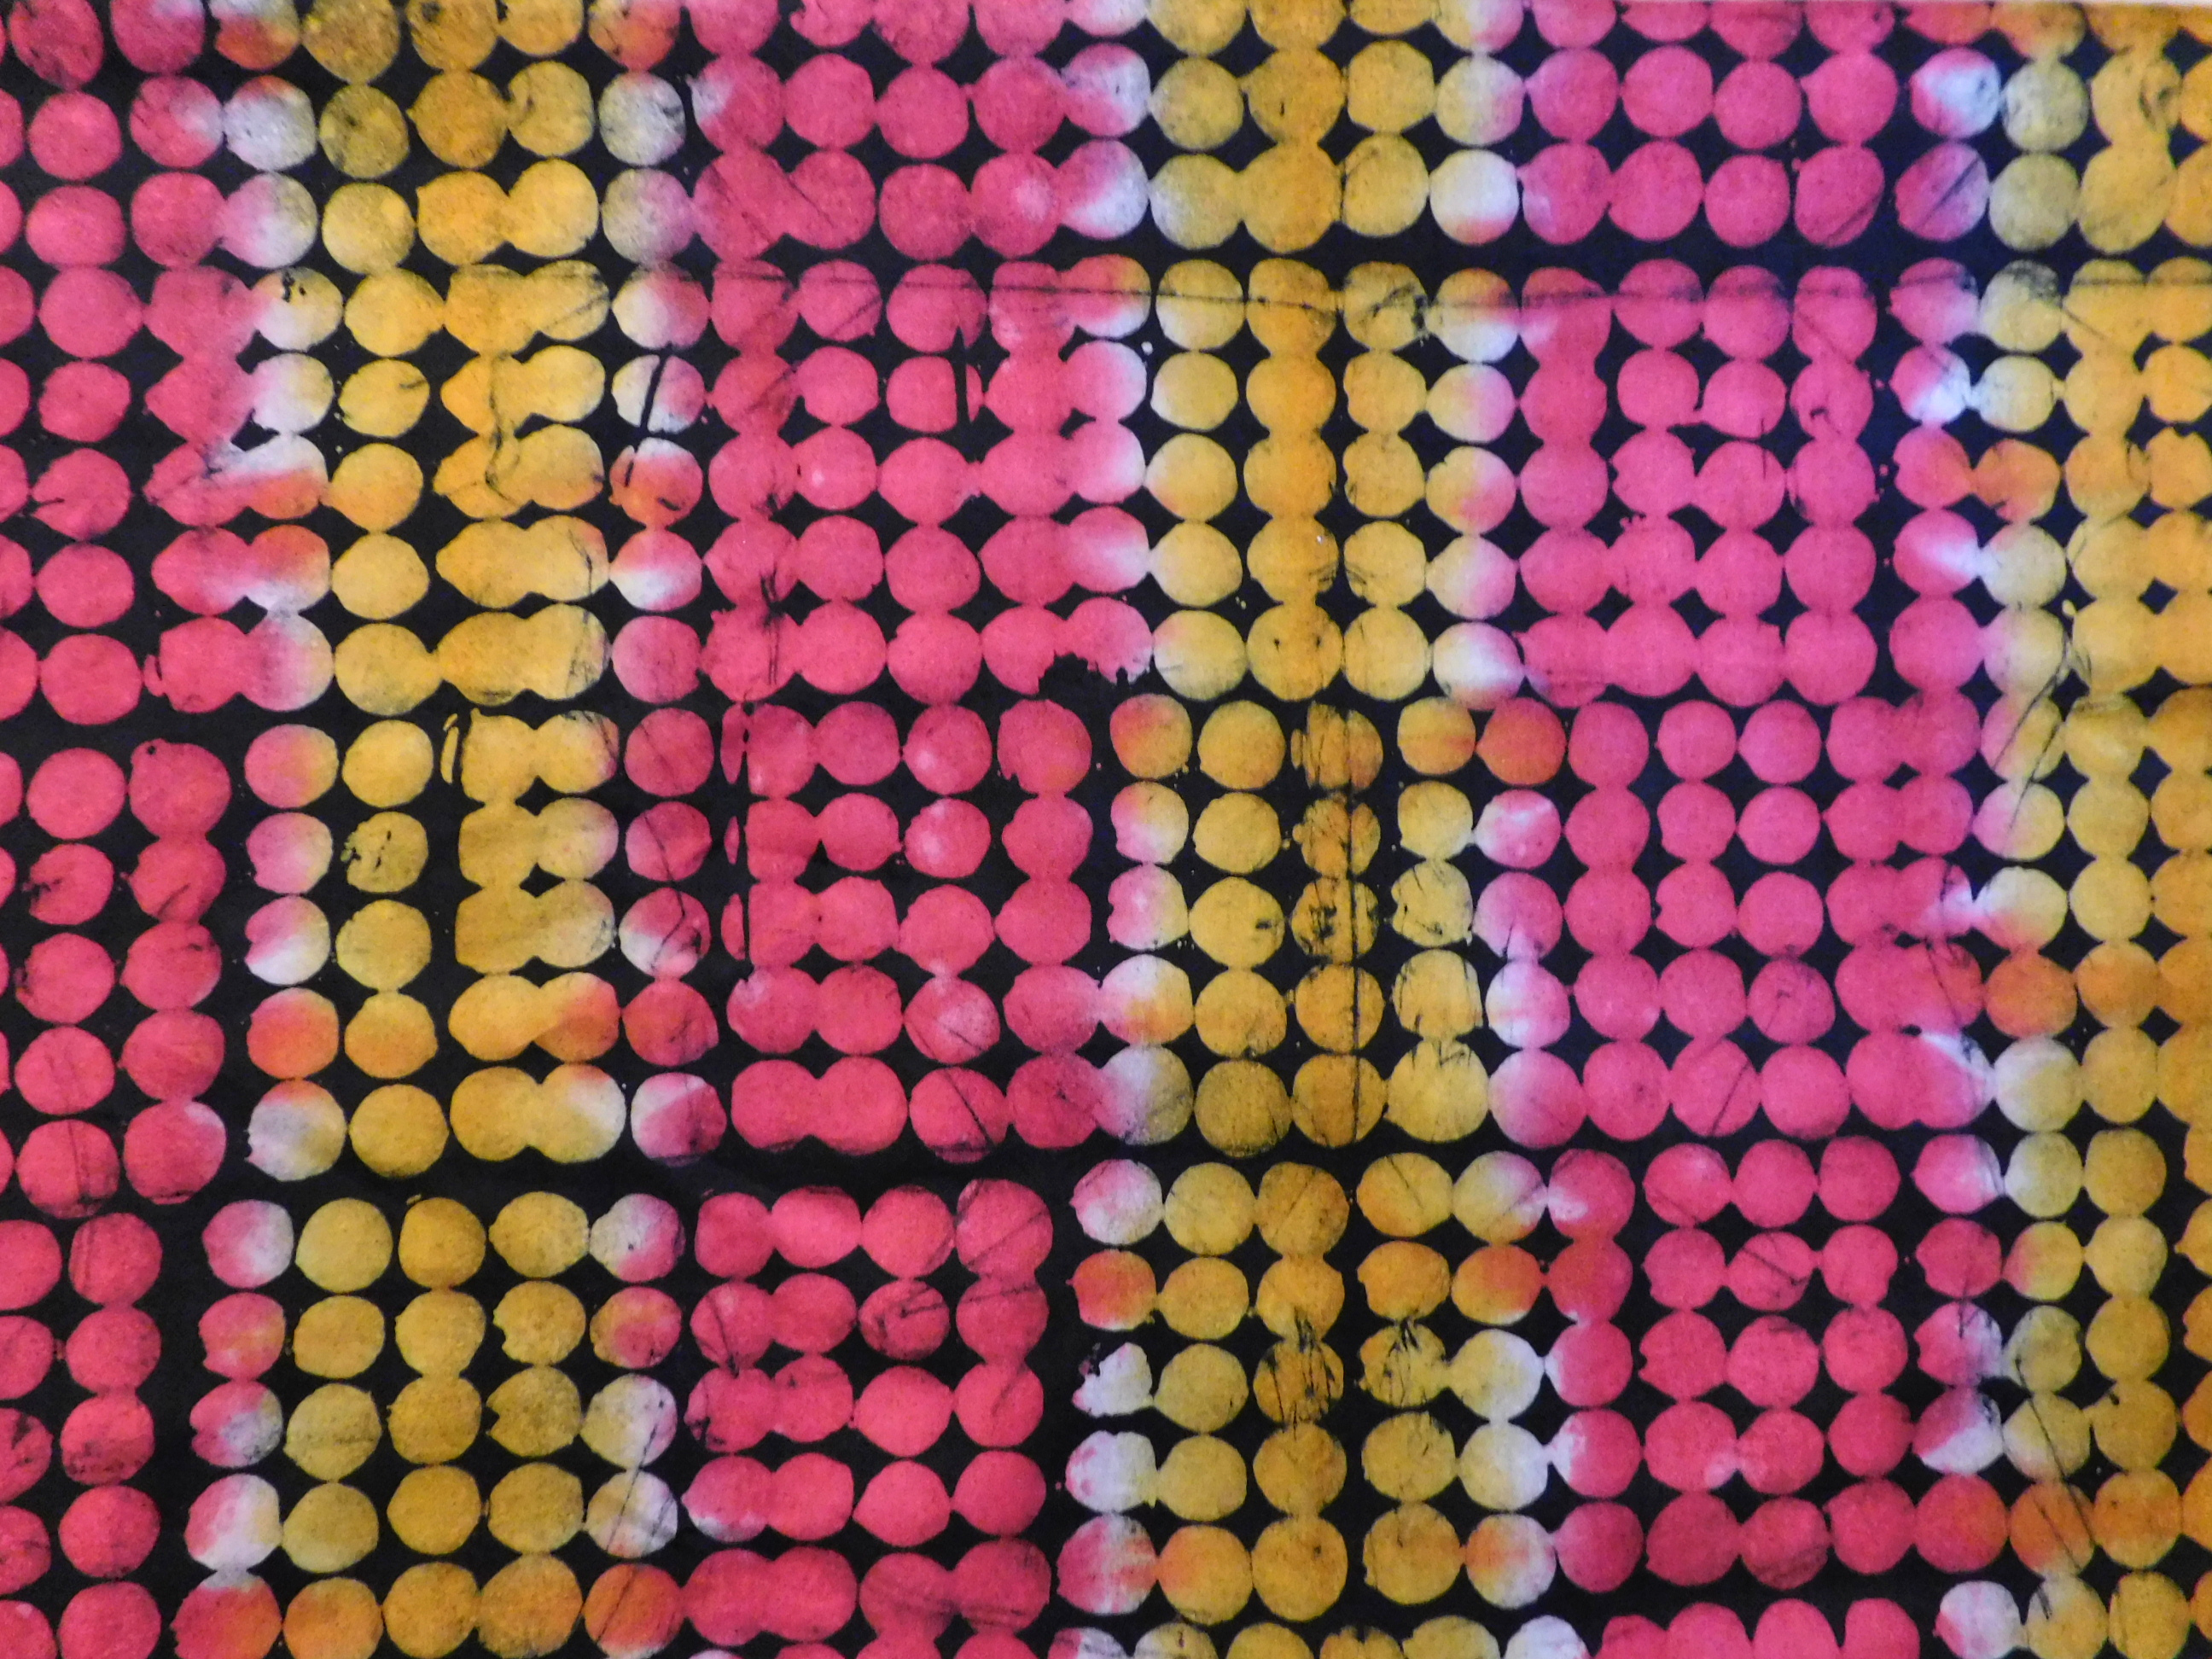 afrikanischer Batikstoff - Handbatik aus Ghana - Baumwolle pink gelb